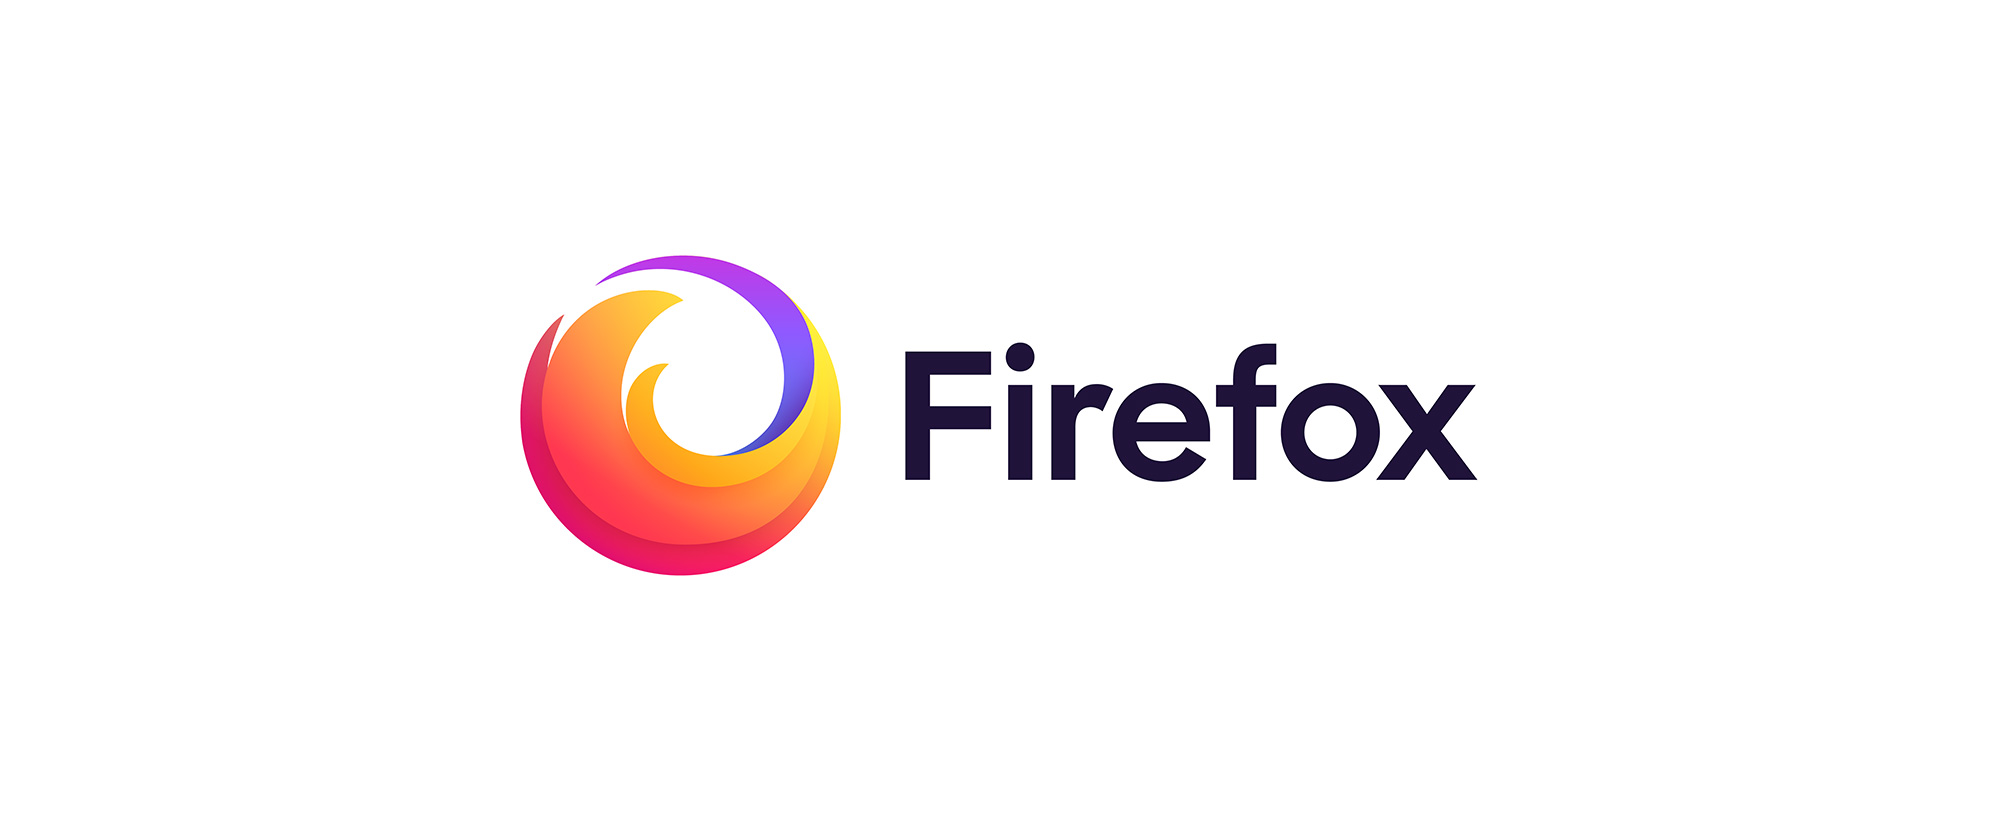 Μείωση διάσπασης προσοχής με το redesign του Mozilla Firefox